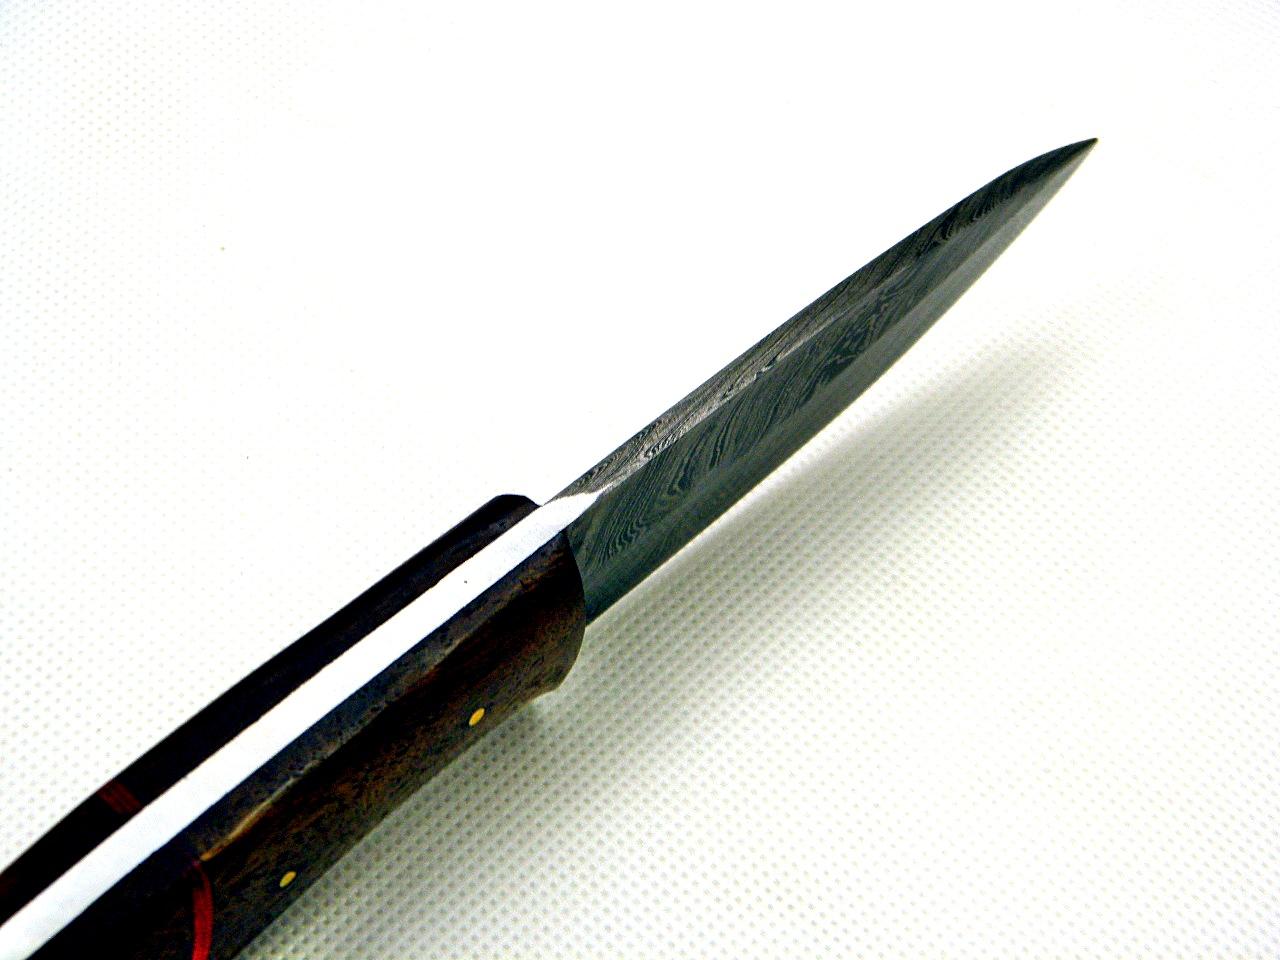 40/ Damaškový lovecky nůž. Rucni vyroba - Sport a turistika